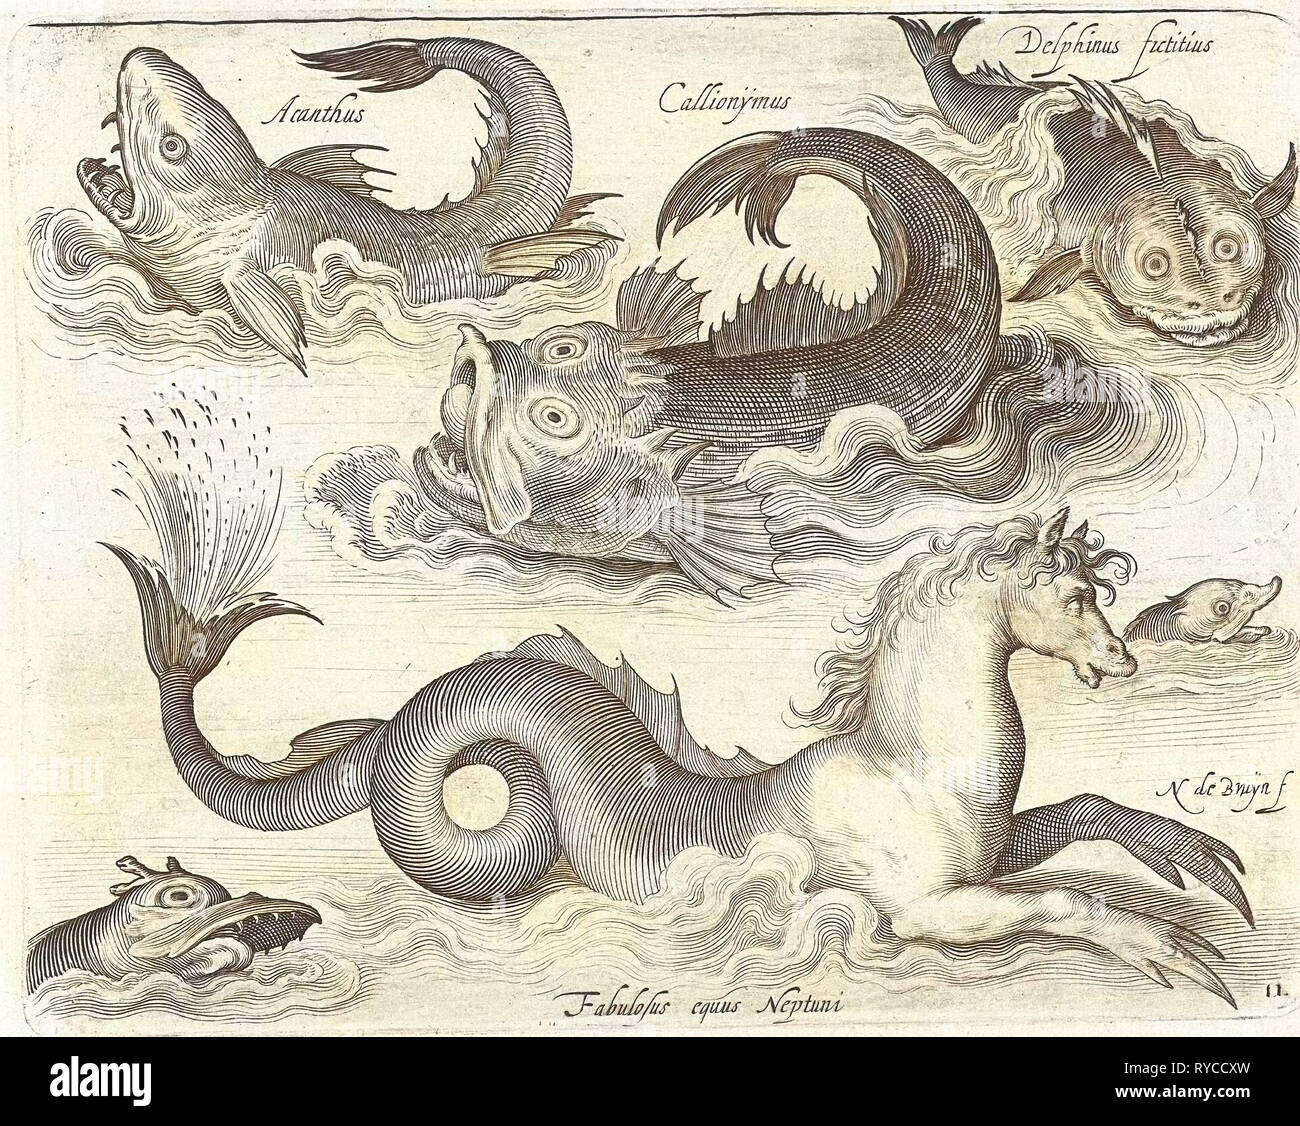 Les invertébrés fantastique, y compris un hippocampe, Nicolaes de Bruyn, 1581 - 1656 Banque D'Images